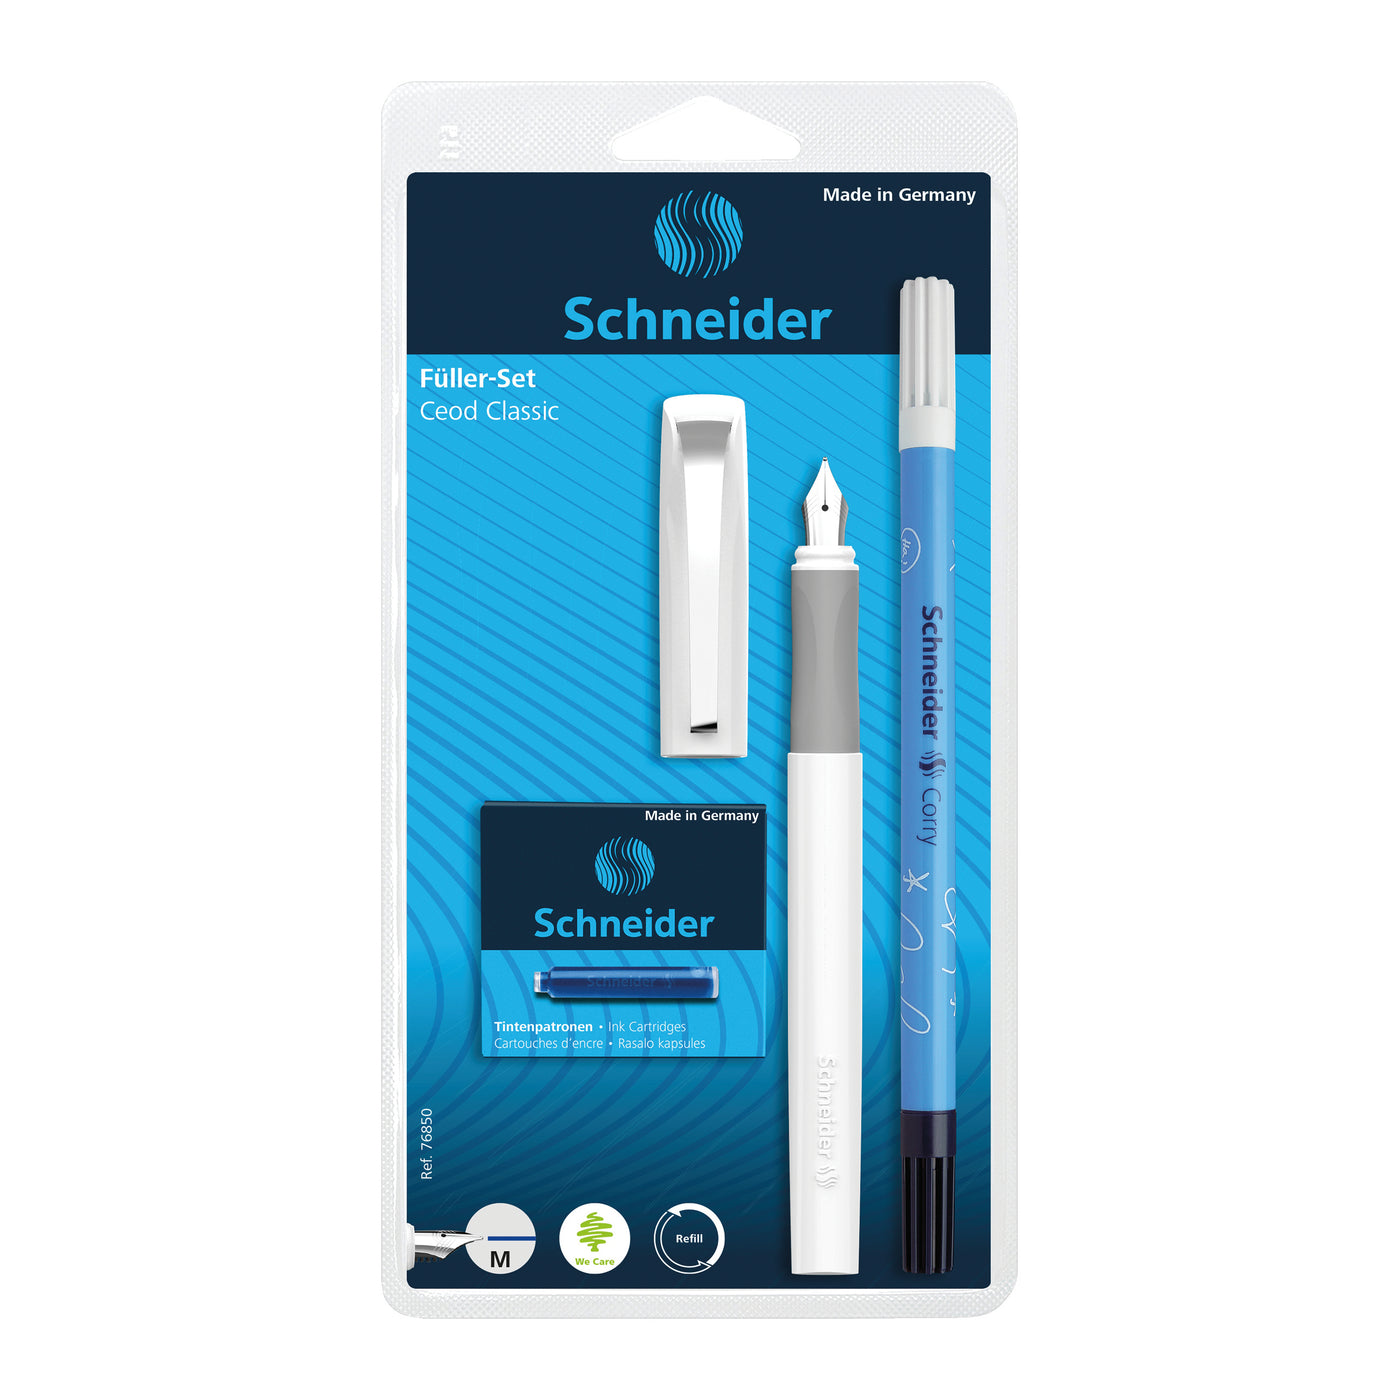 Schneider Ceod Fountain Pen - White